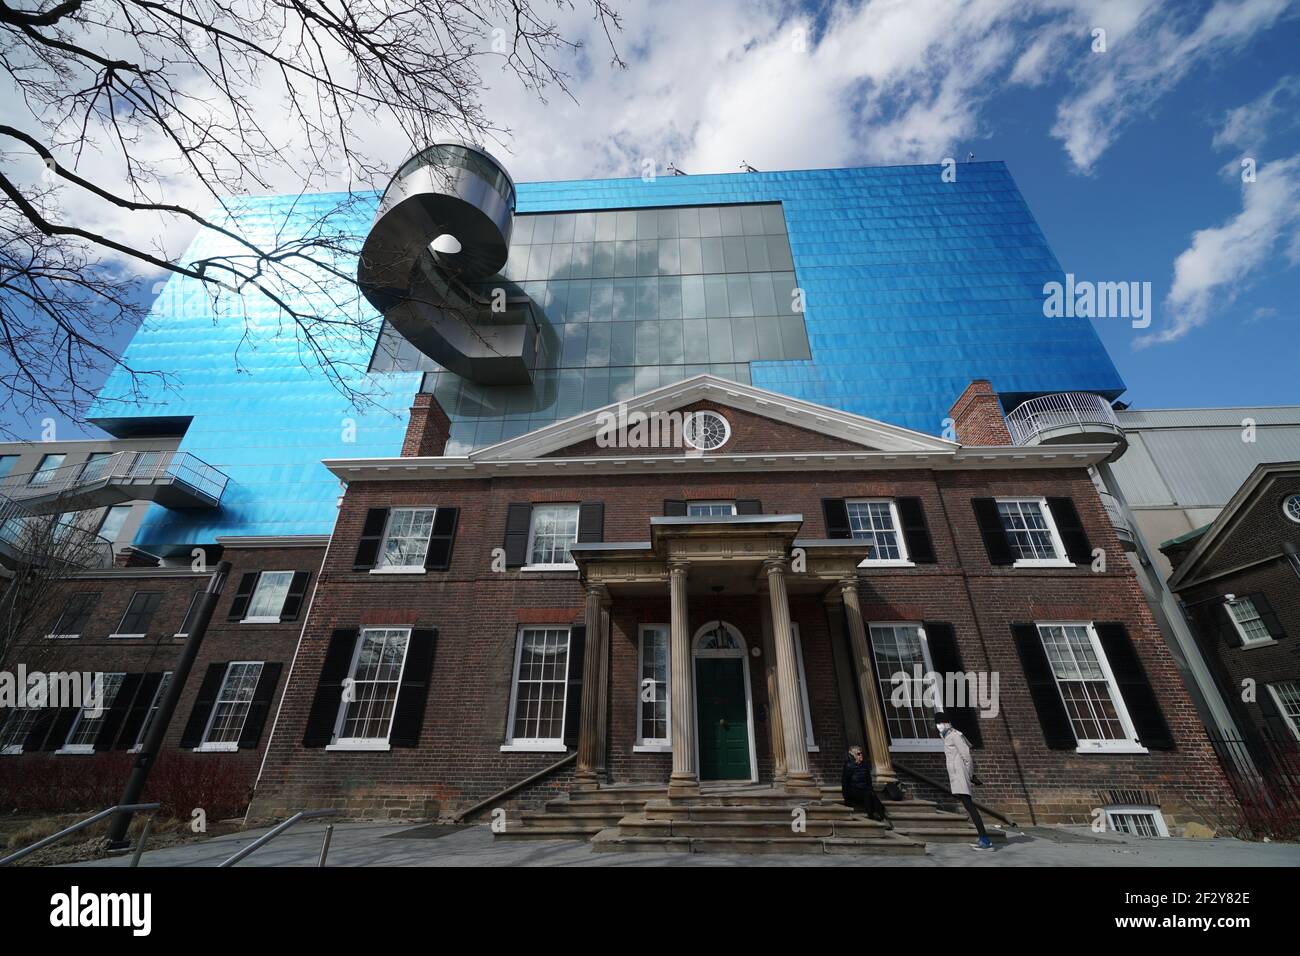 Toronto, eine moderne Ergänzung der Art Gallery of Ontario, entworfen vom Architekten Frank Gehry, erhebt sich hinter dem älteren Original Stockfoto